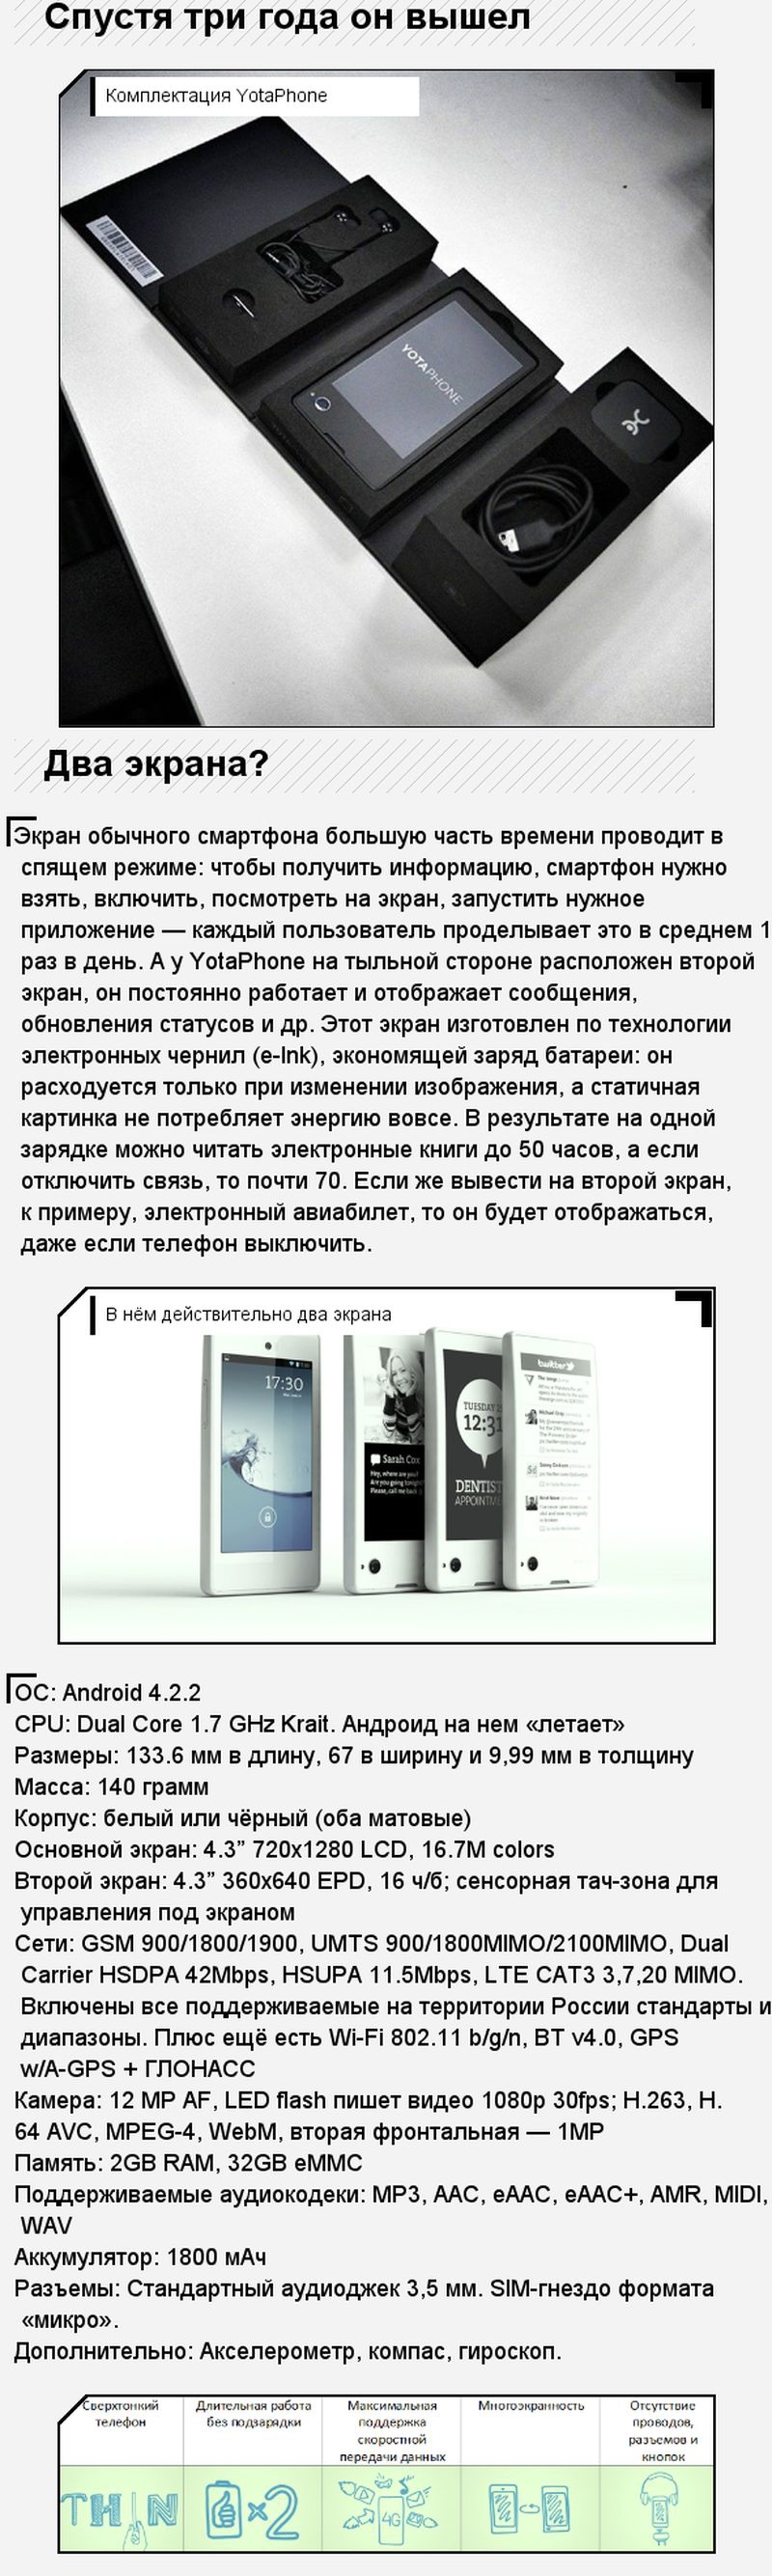 Российский вариант убийцы айфона теперь в продаже 